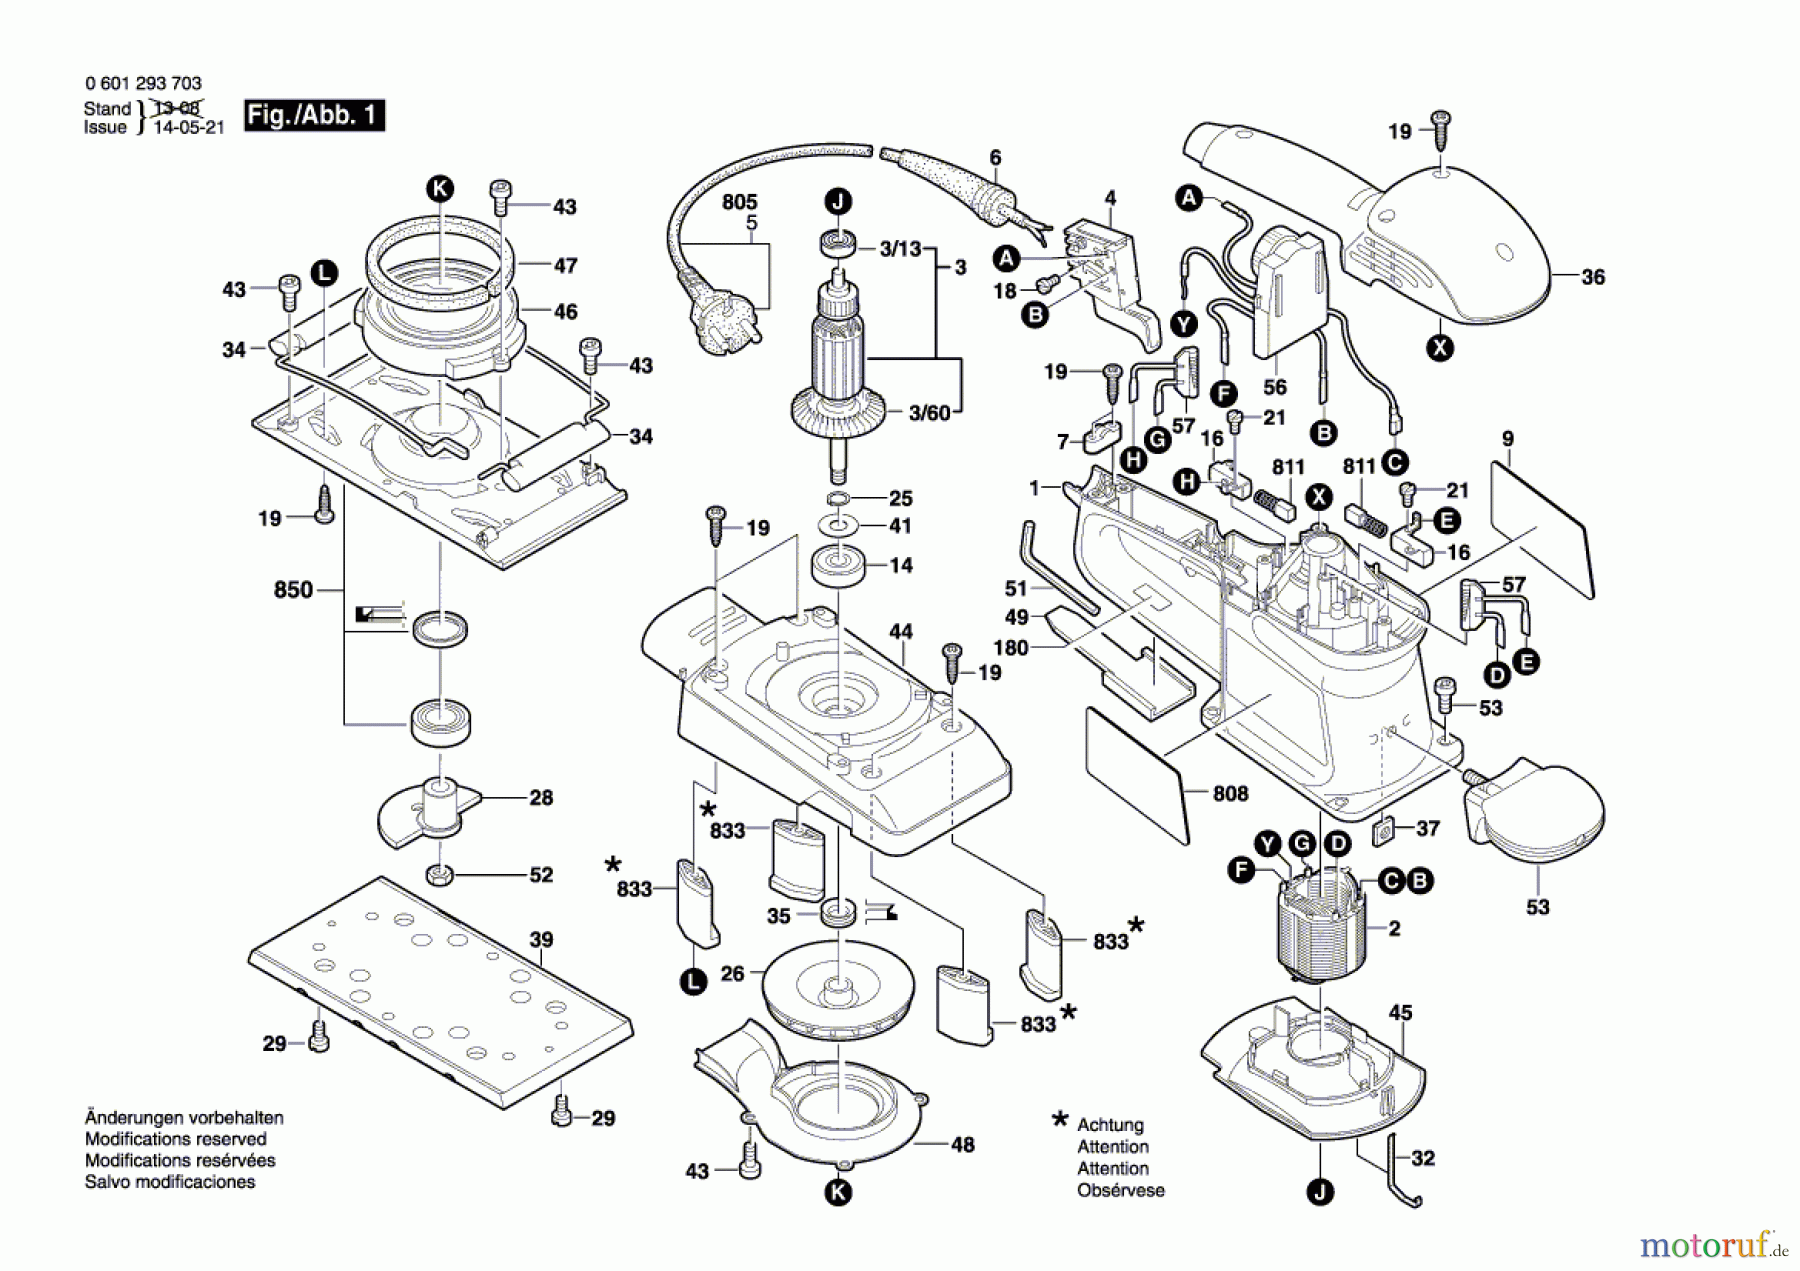  Bosch Werkzeug Schwingschleifer GSS 280 AE Seite 1